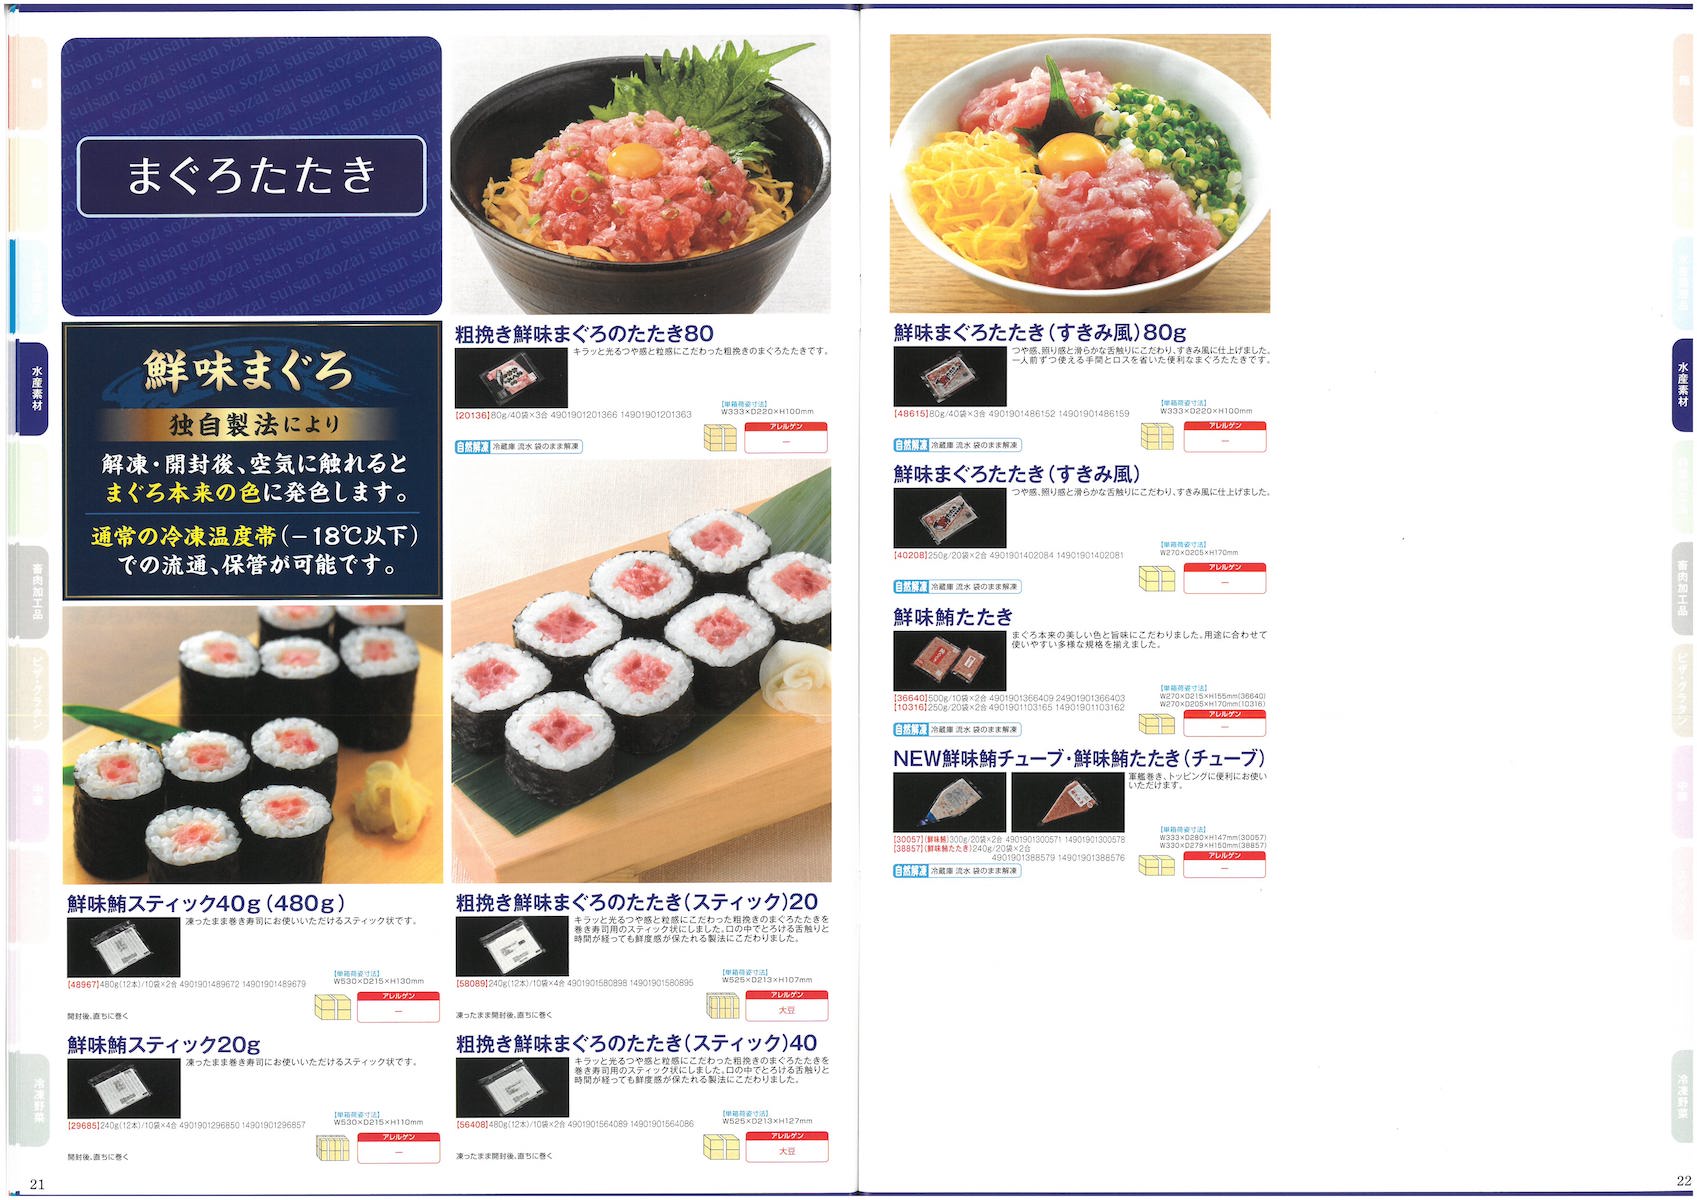 マルハニチロ　2019　業務用商品カタログ　総合　product catalog for professional use maruha nichiro